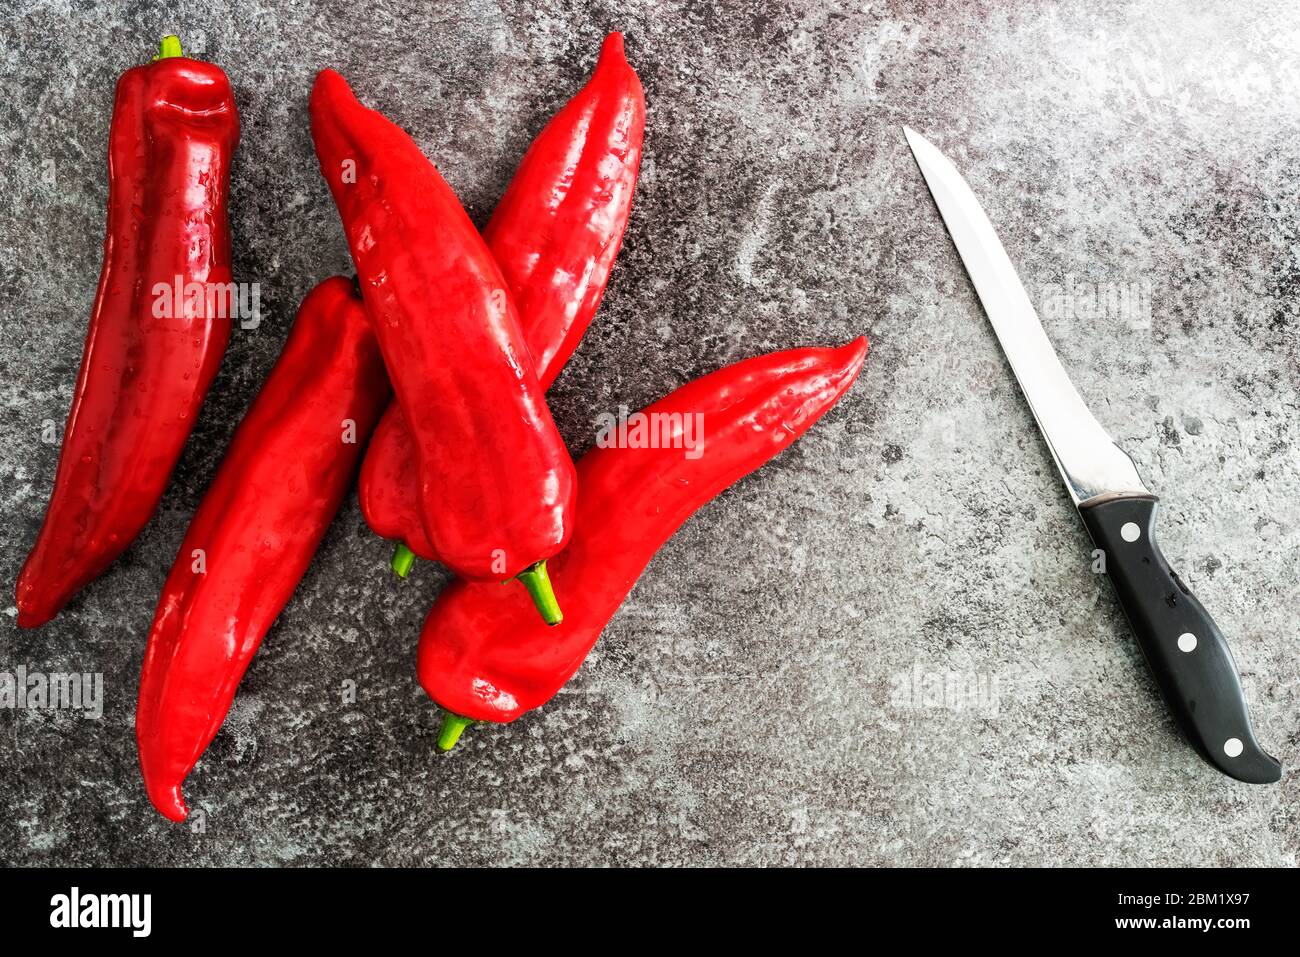 Direkt über Ansicht von roten Paprika und Schneidmesser auf Steinküchenplatte Stockfoto